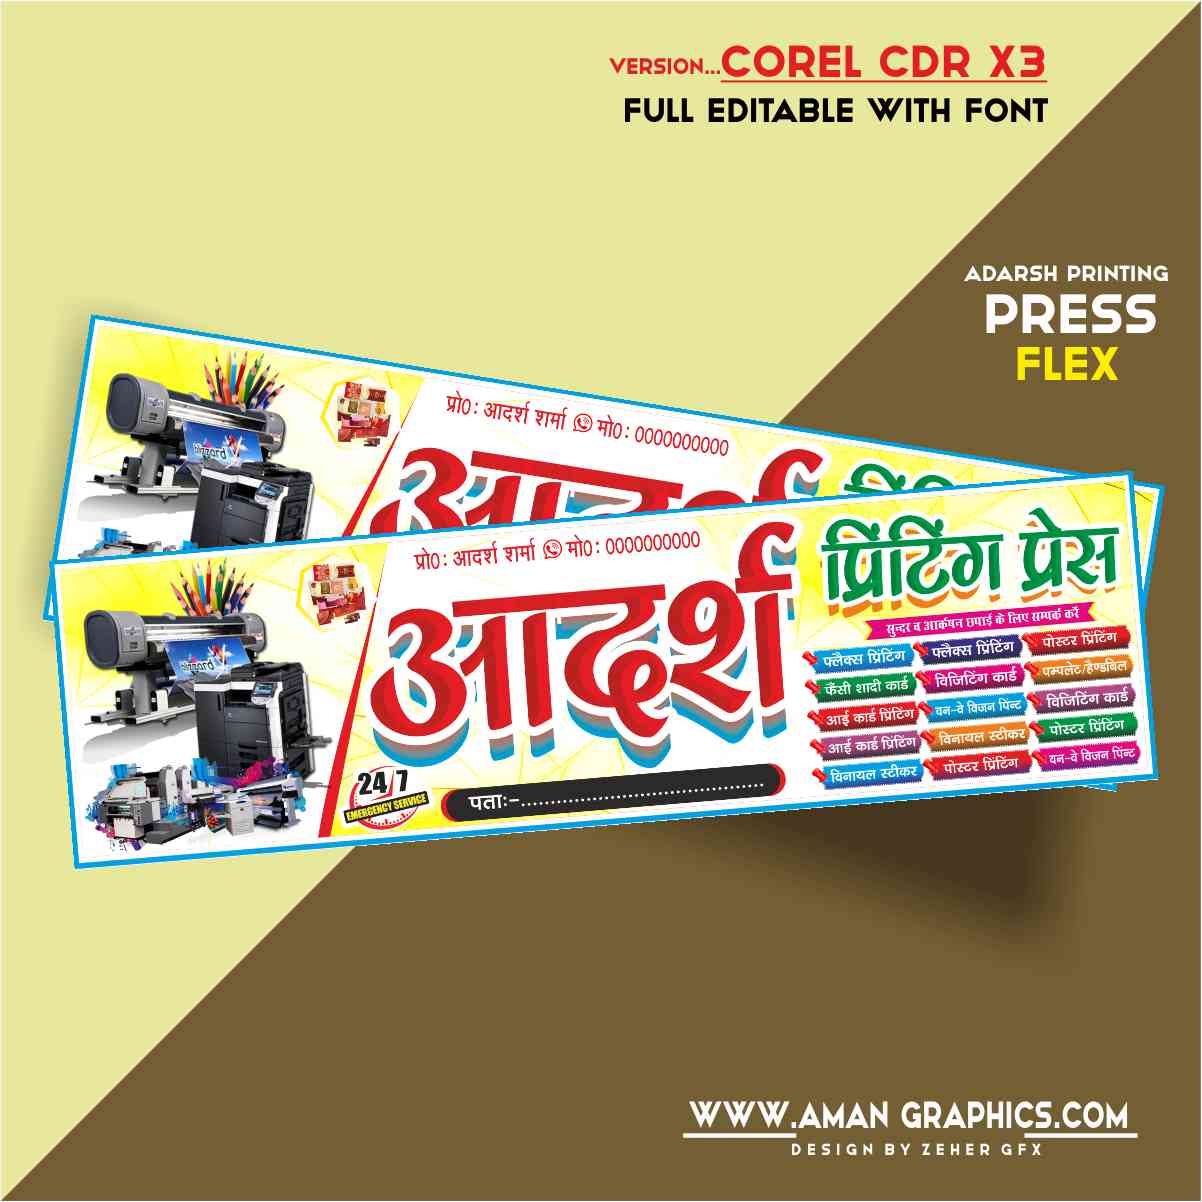 Adarsh Printing Press Banner Design Cdr File